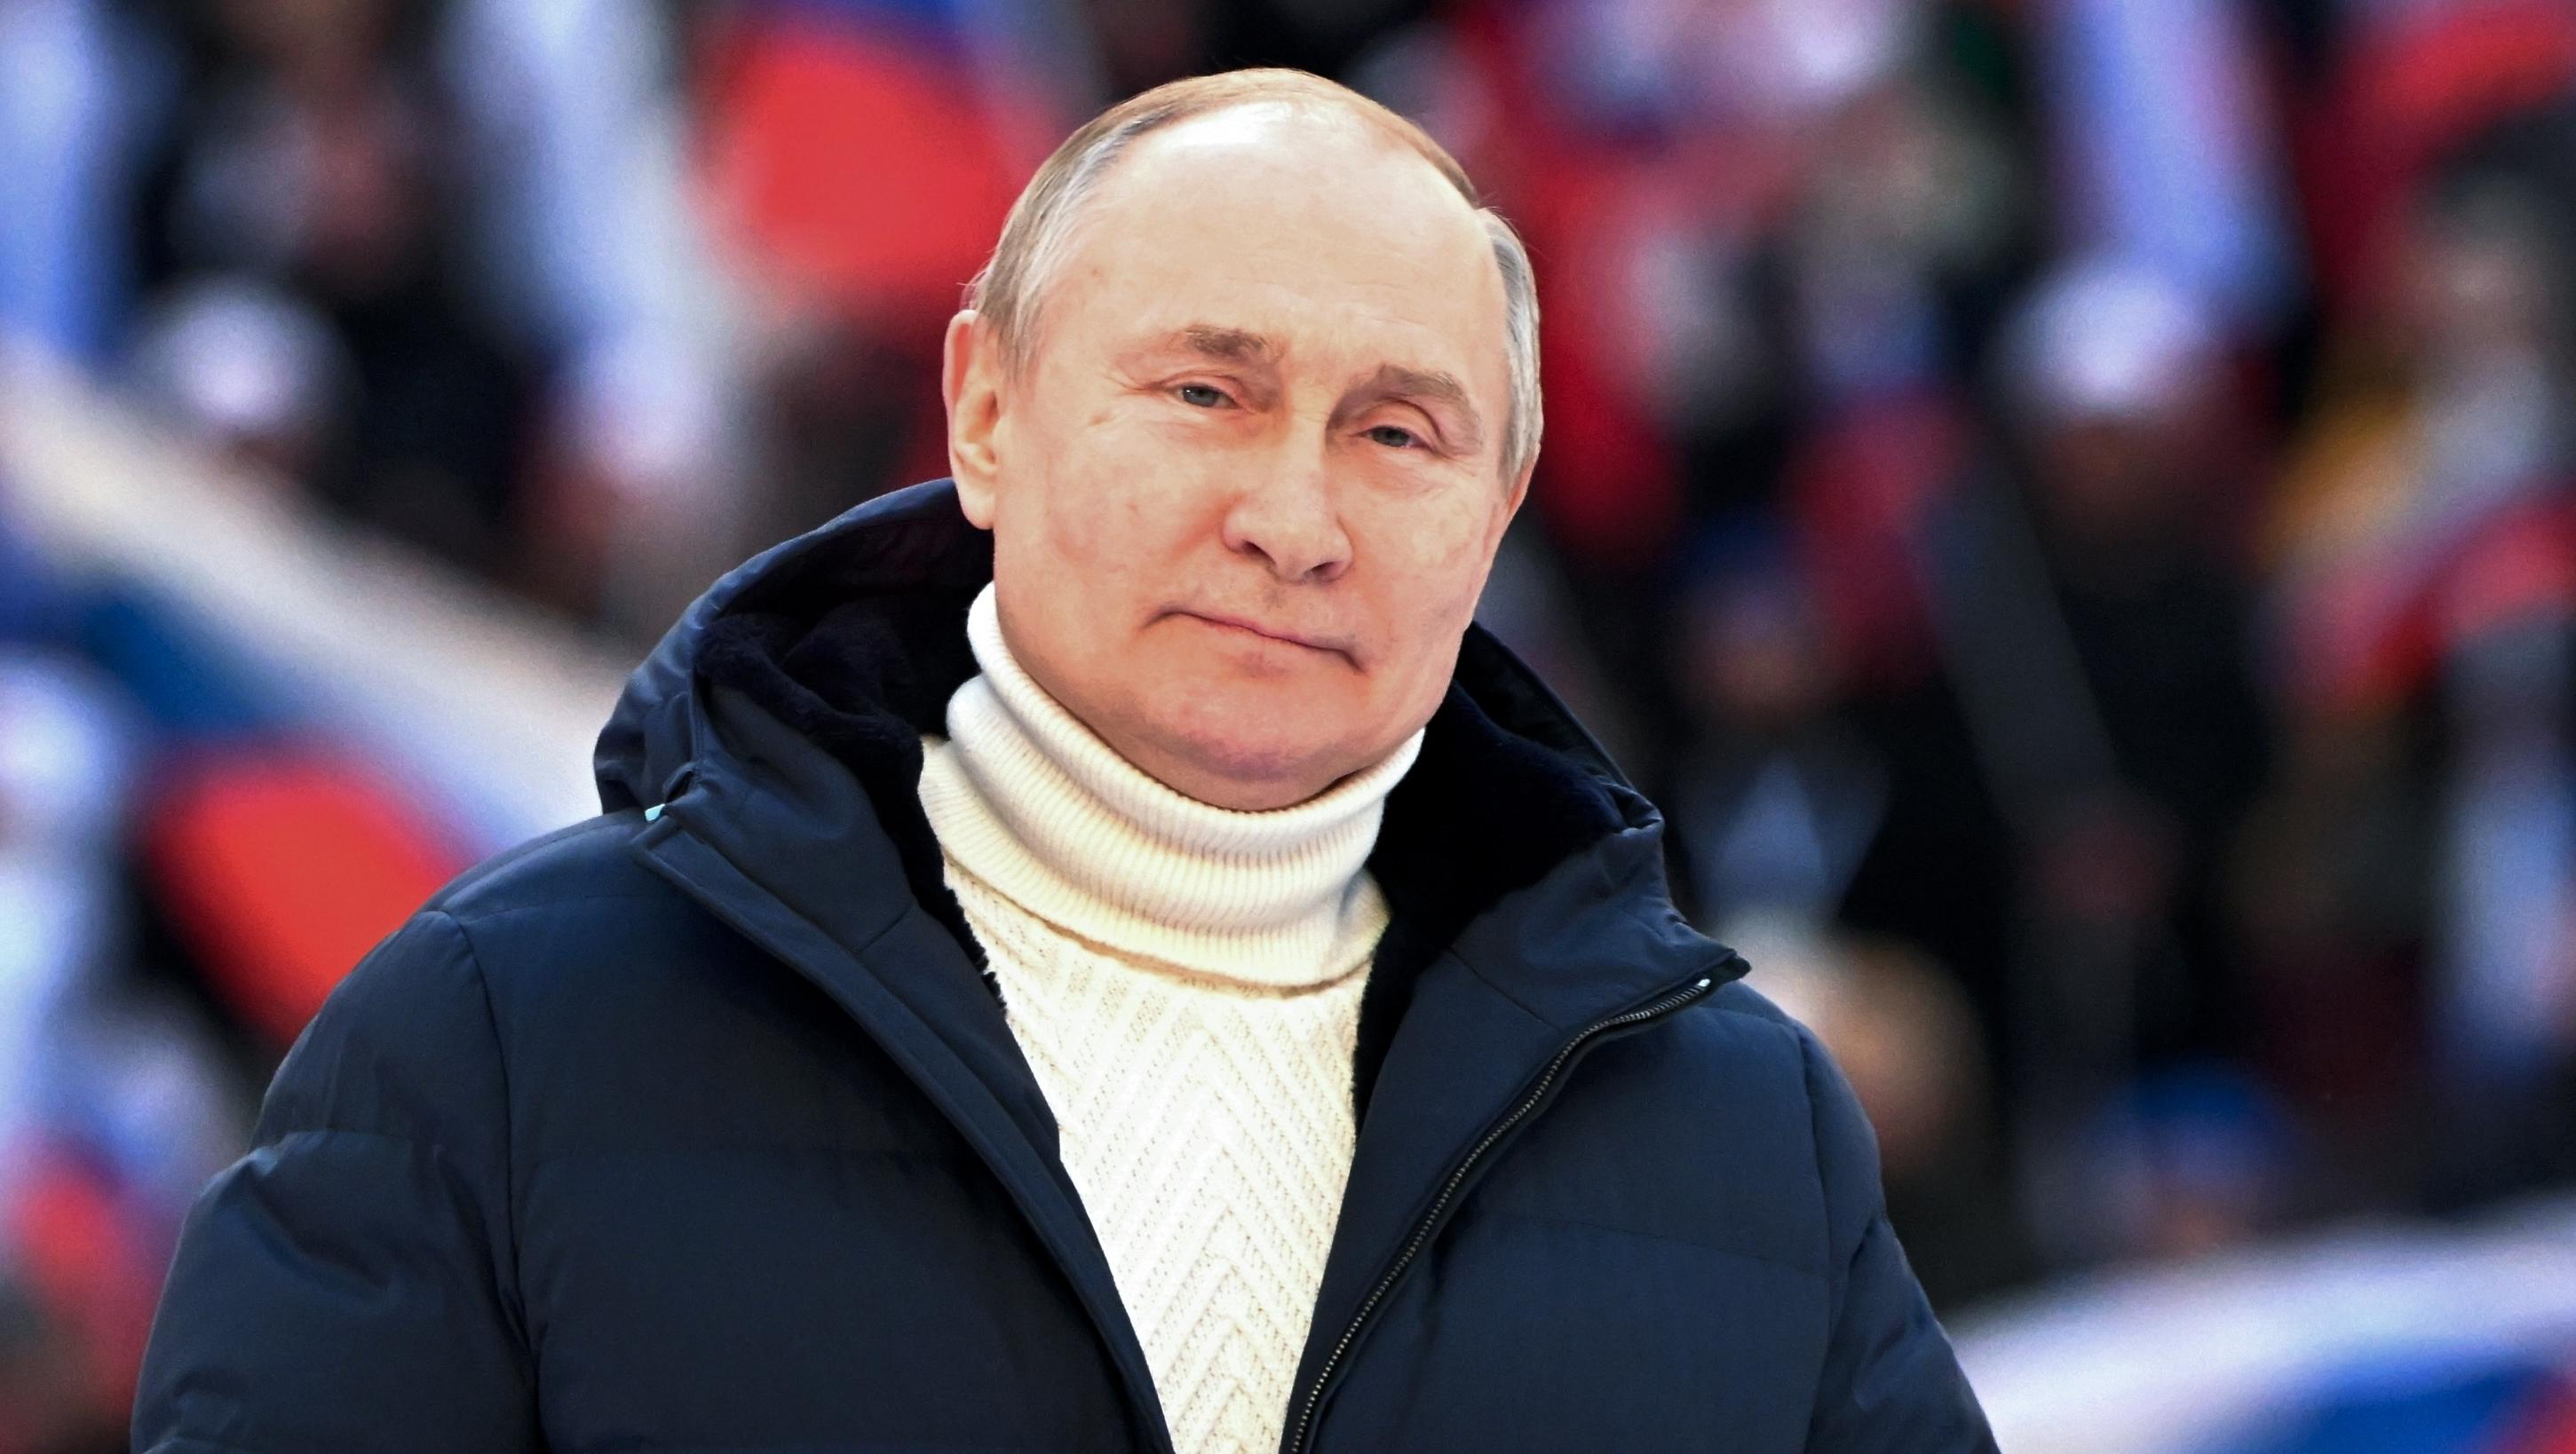 Harter Schlag gegen den Dollar: Russland fordert Rubel für sein Gas